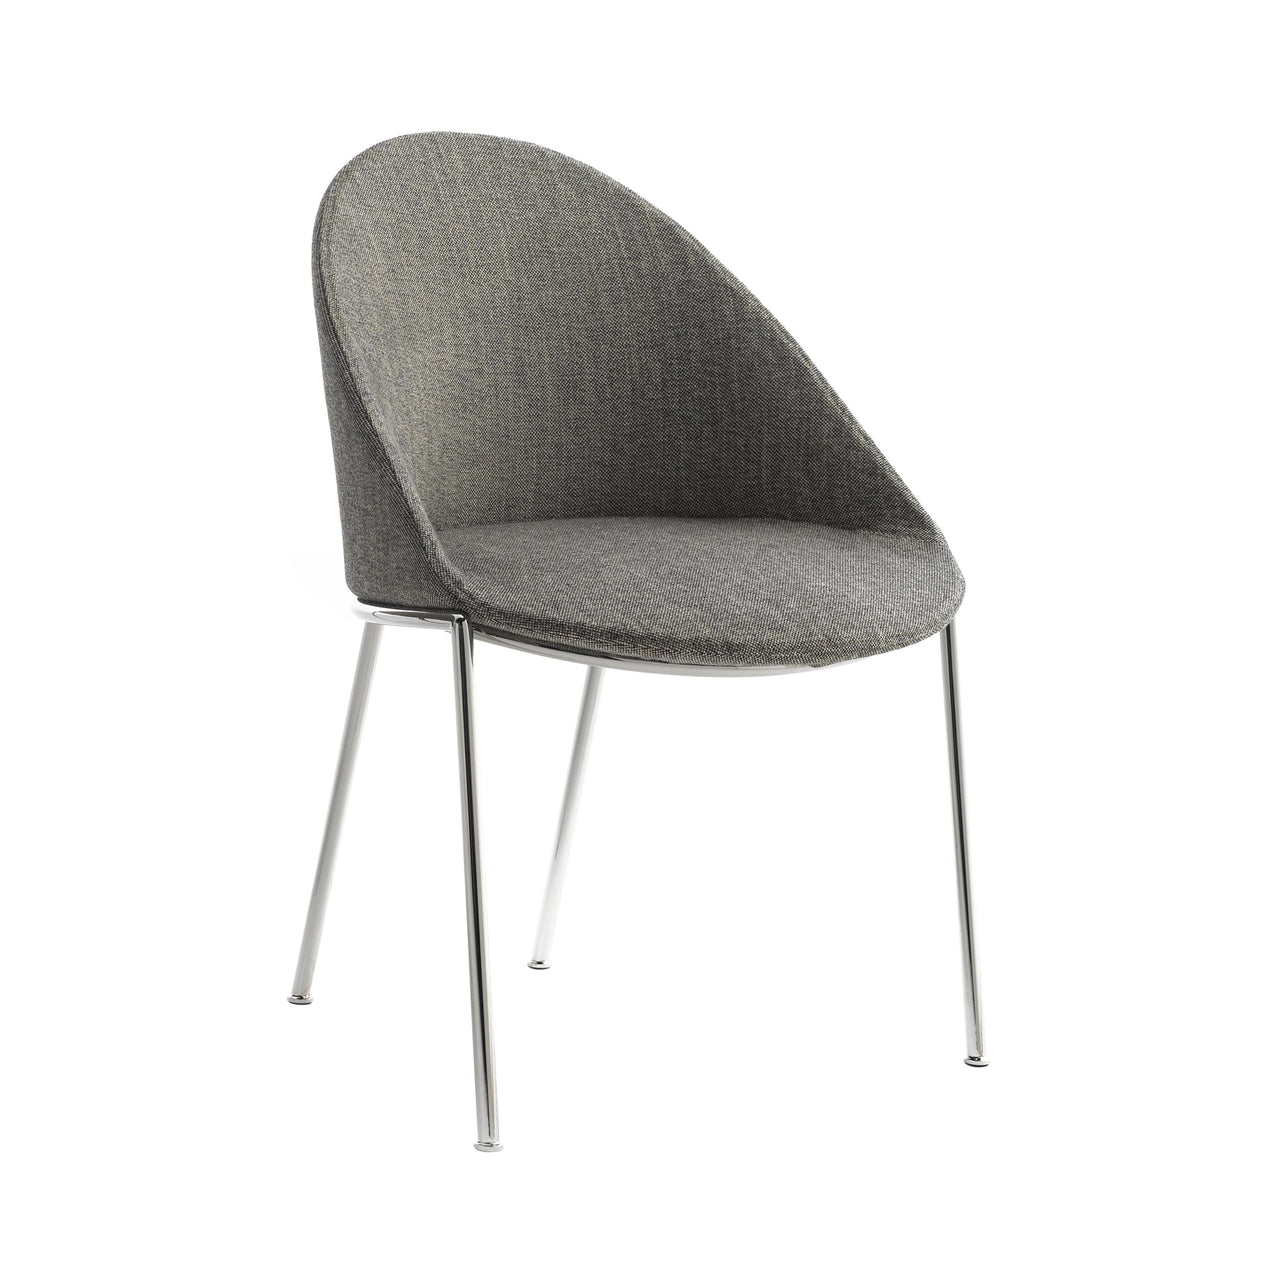 Circa Dining Chair: Chrome